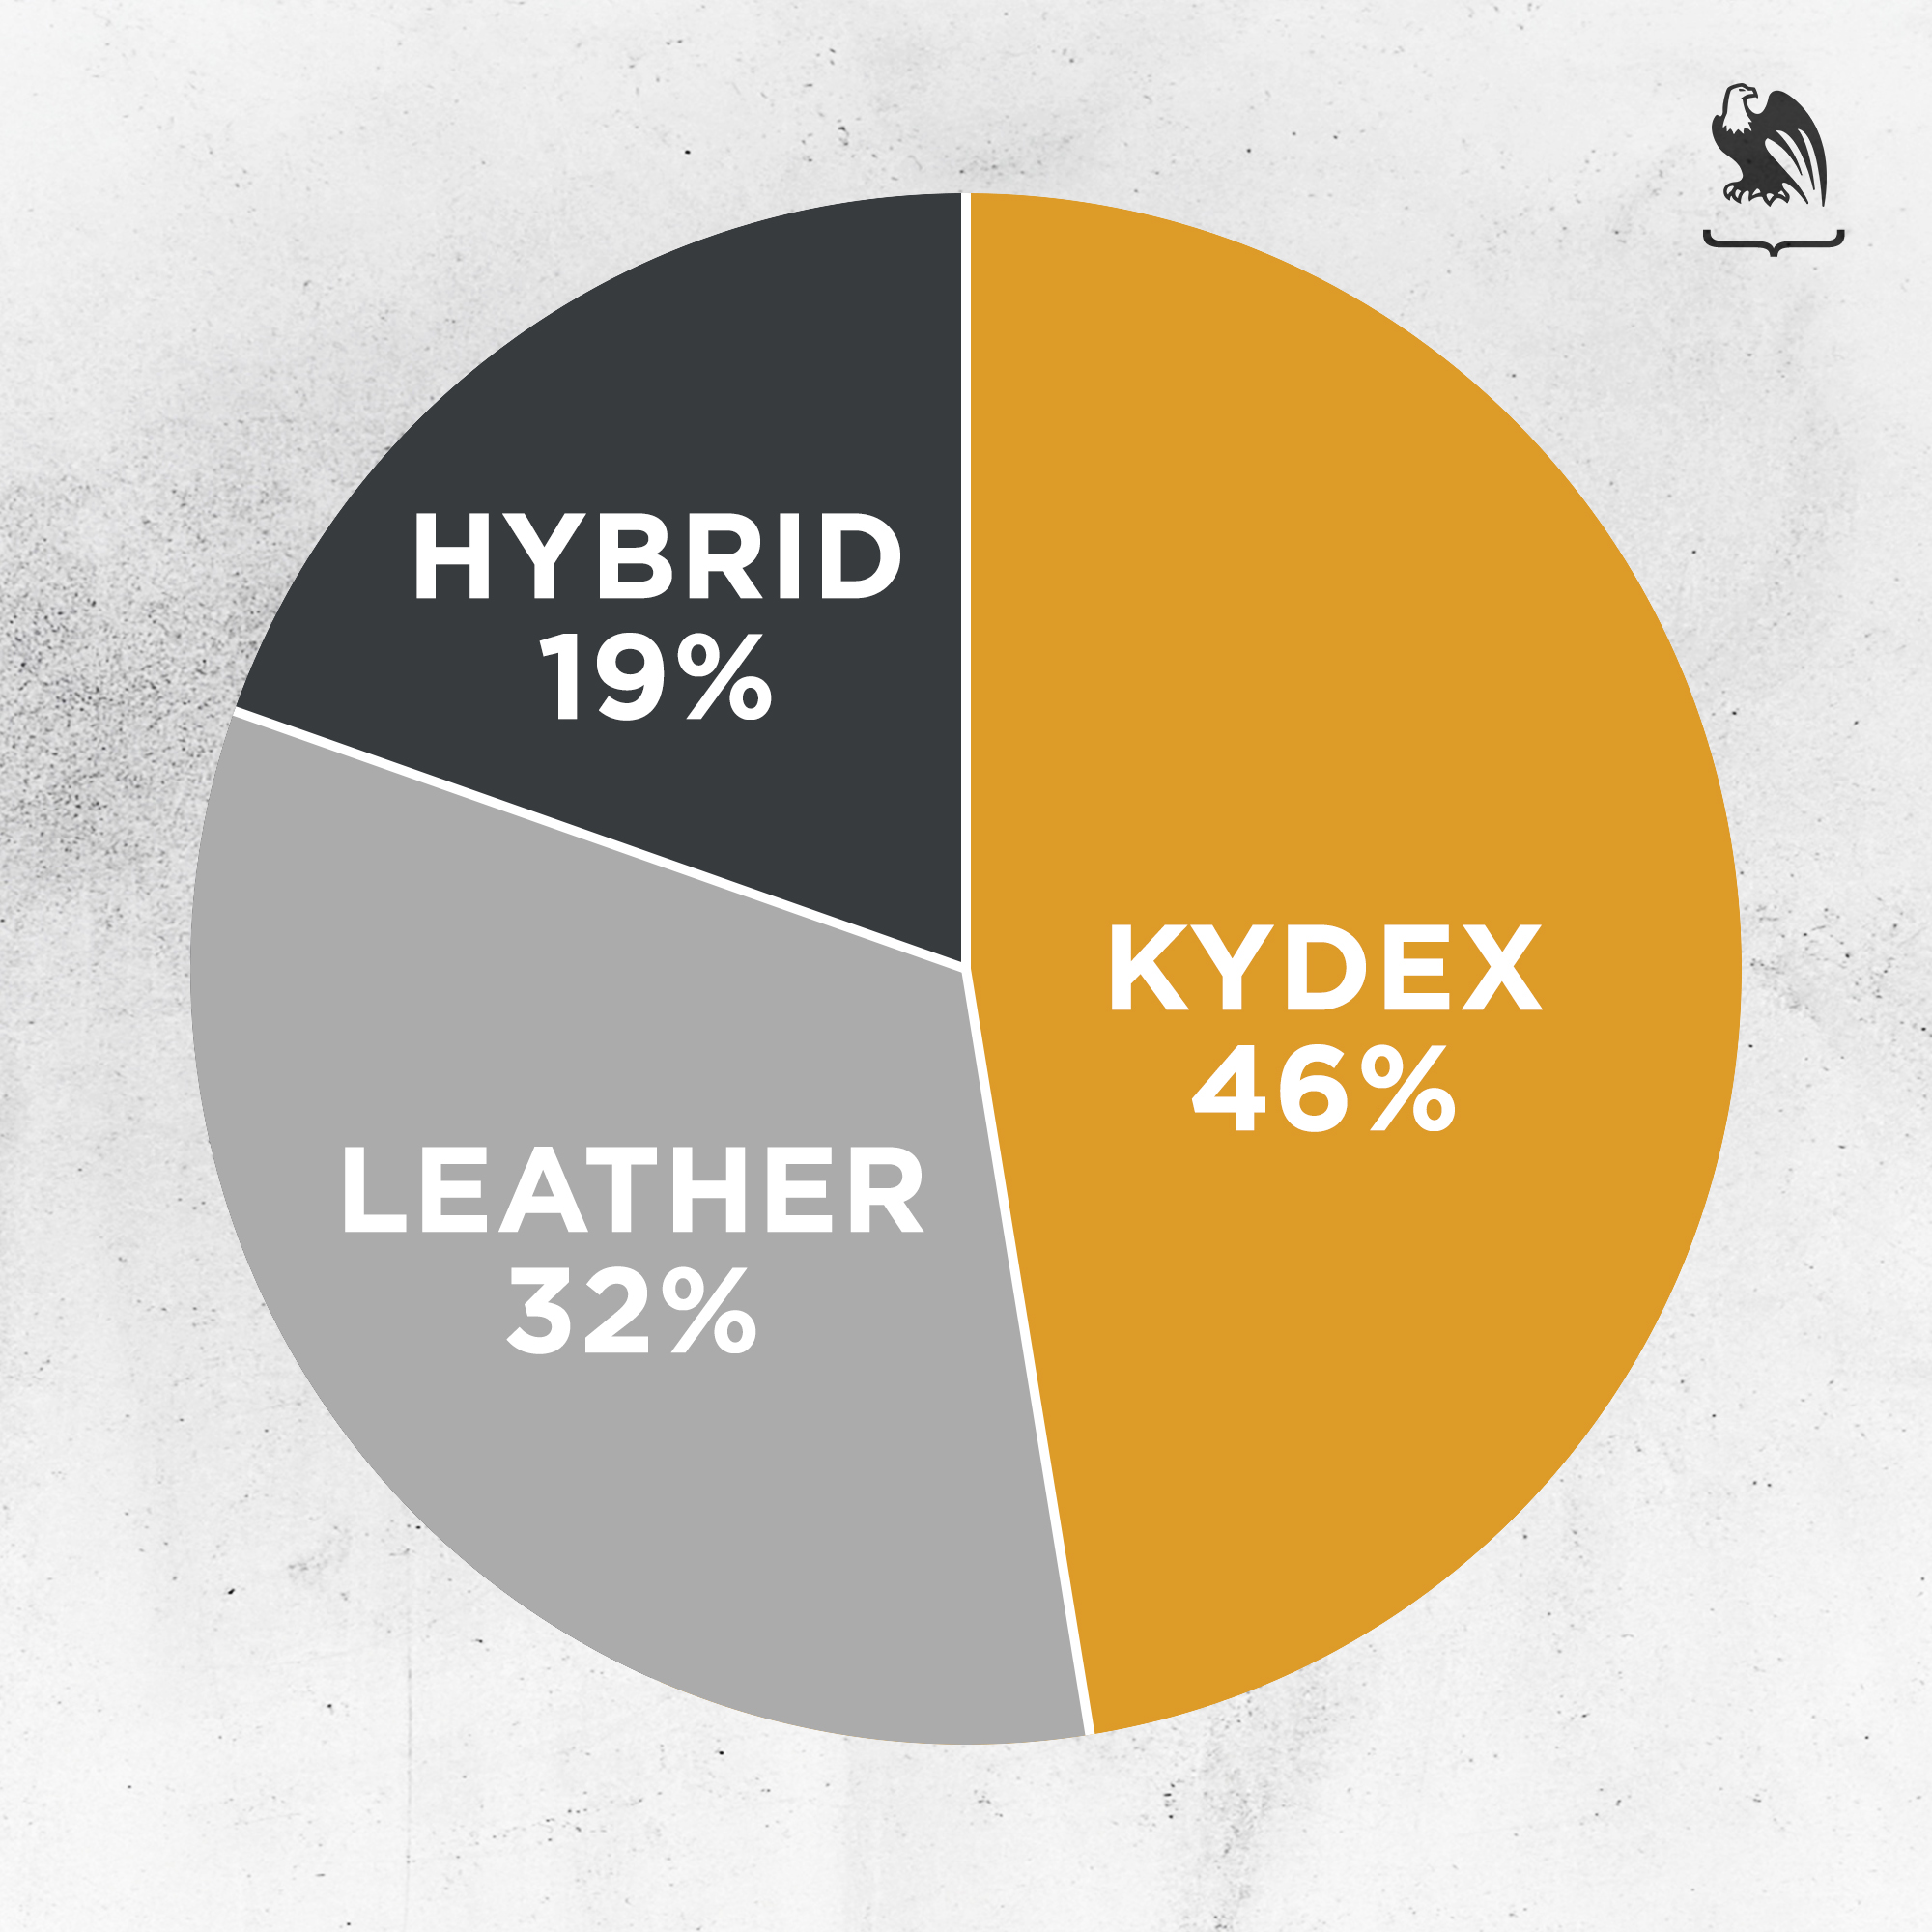 Comfort -  Hybrid, Leather & Kydex